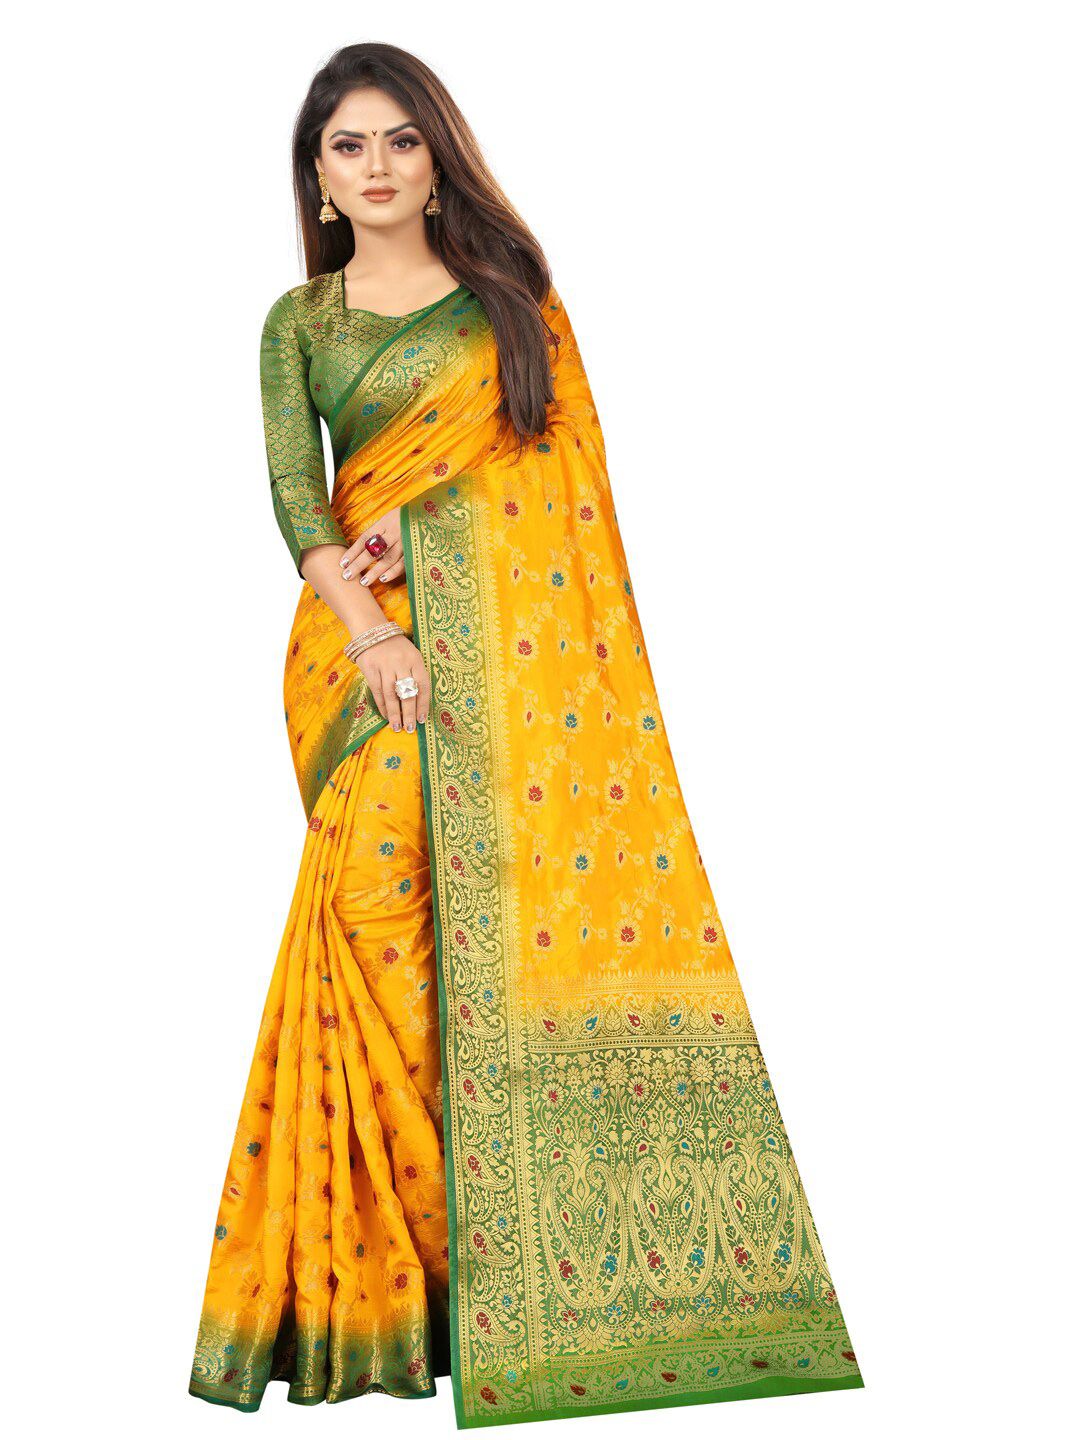 PERFECT WEAR Yellow & Green Woven Design Zari Silk Cotton Banarasi Saree Price in India